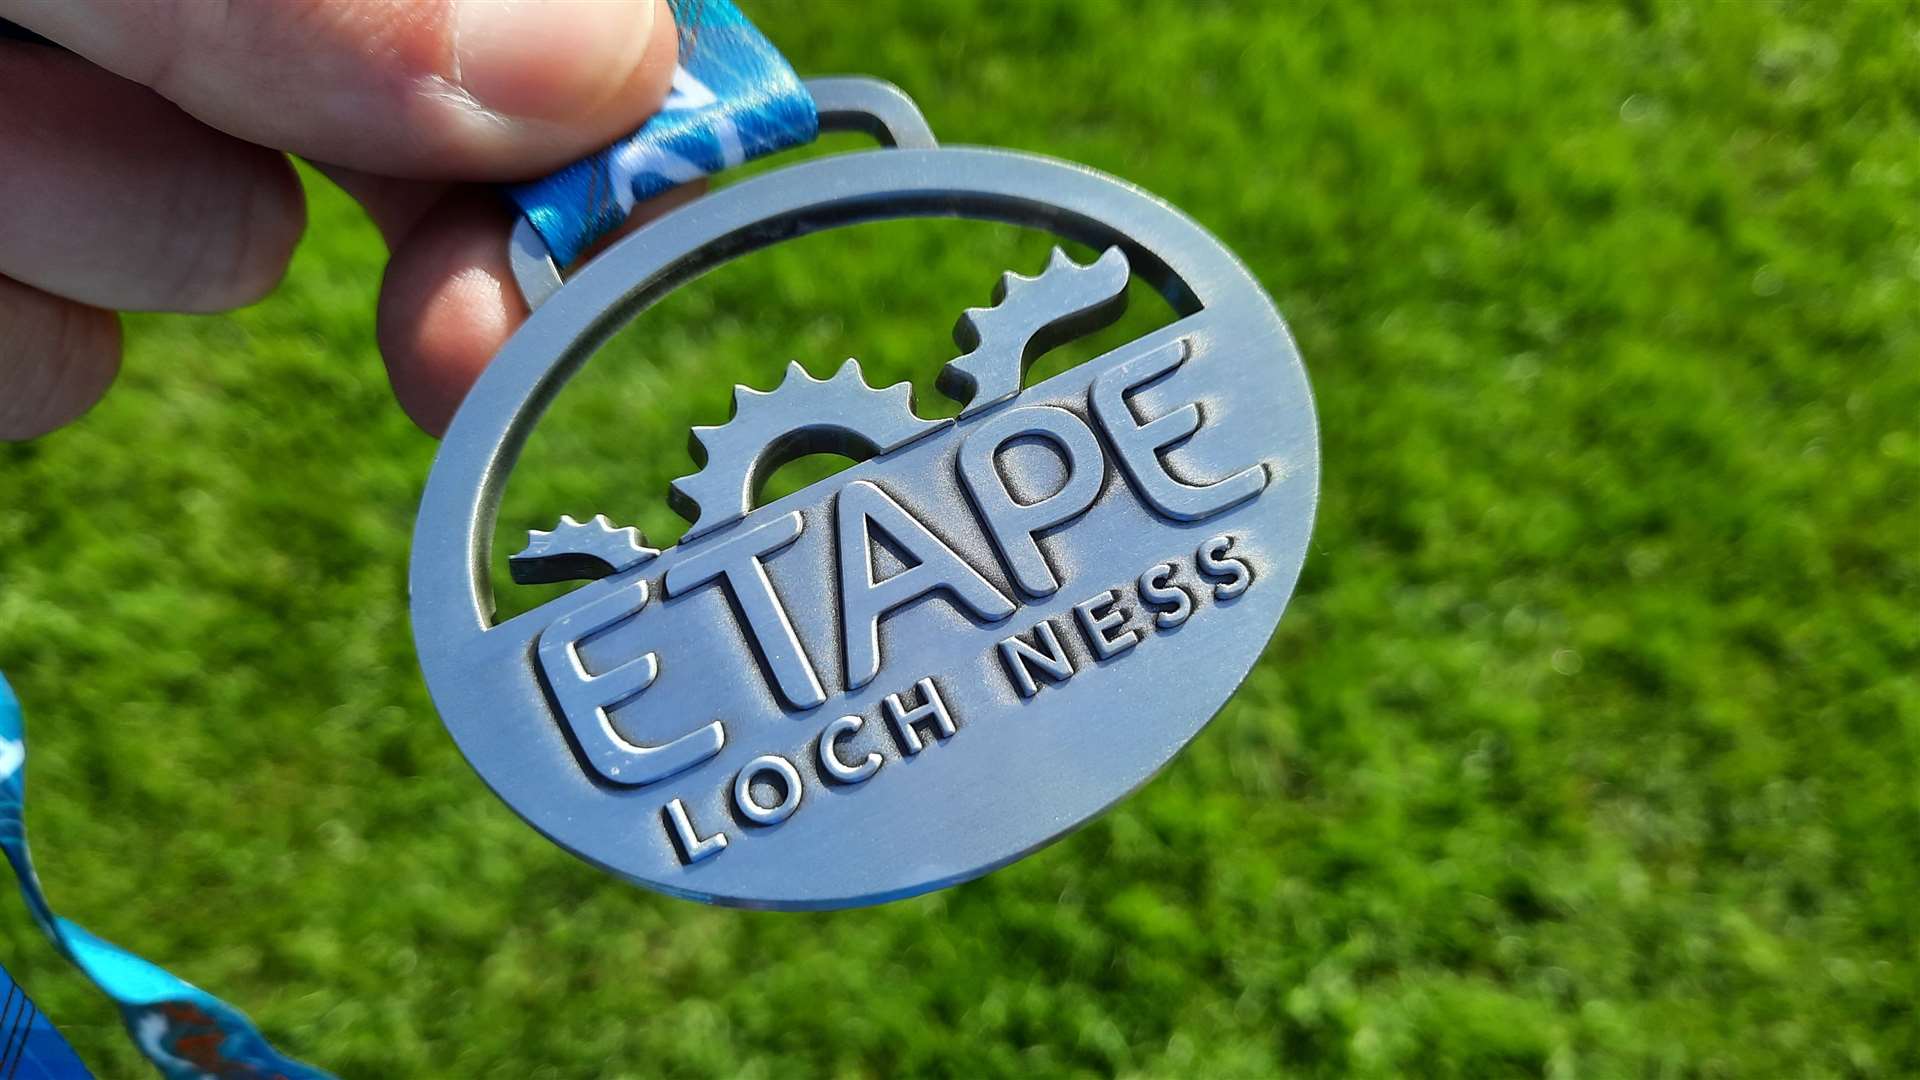 The 2021 Etape Loch Ness medal.